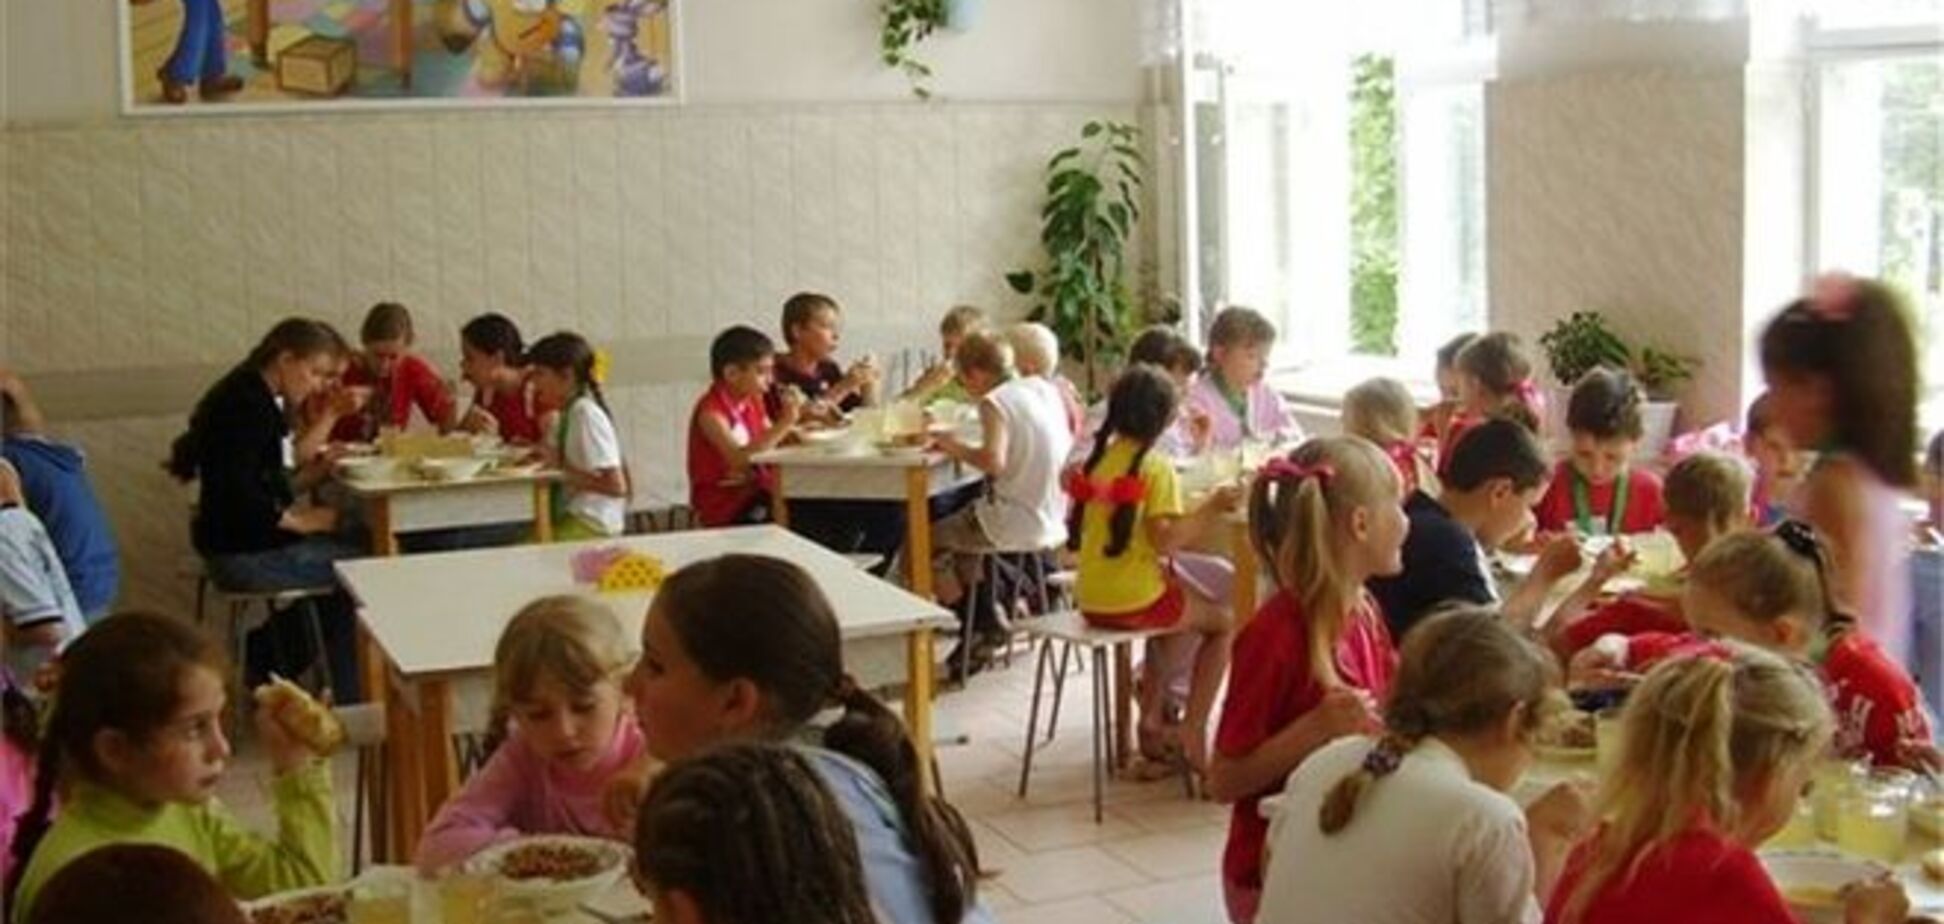 В Киеве предприниматели обогатились на 120 тысяч гривен за счет школьного питания